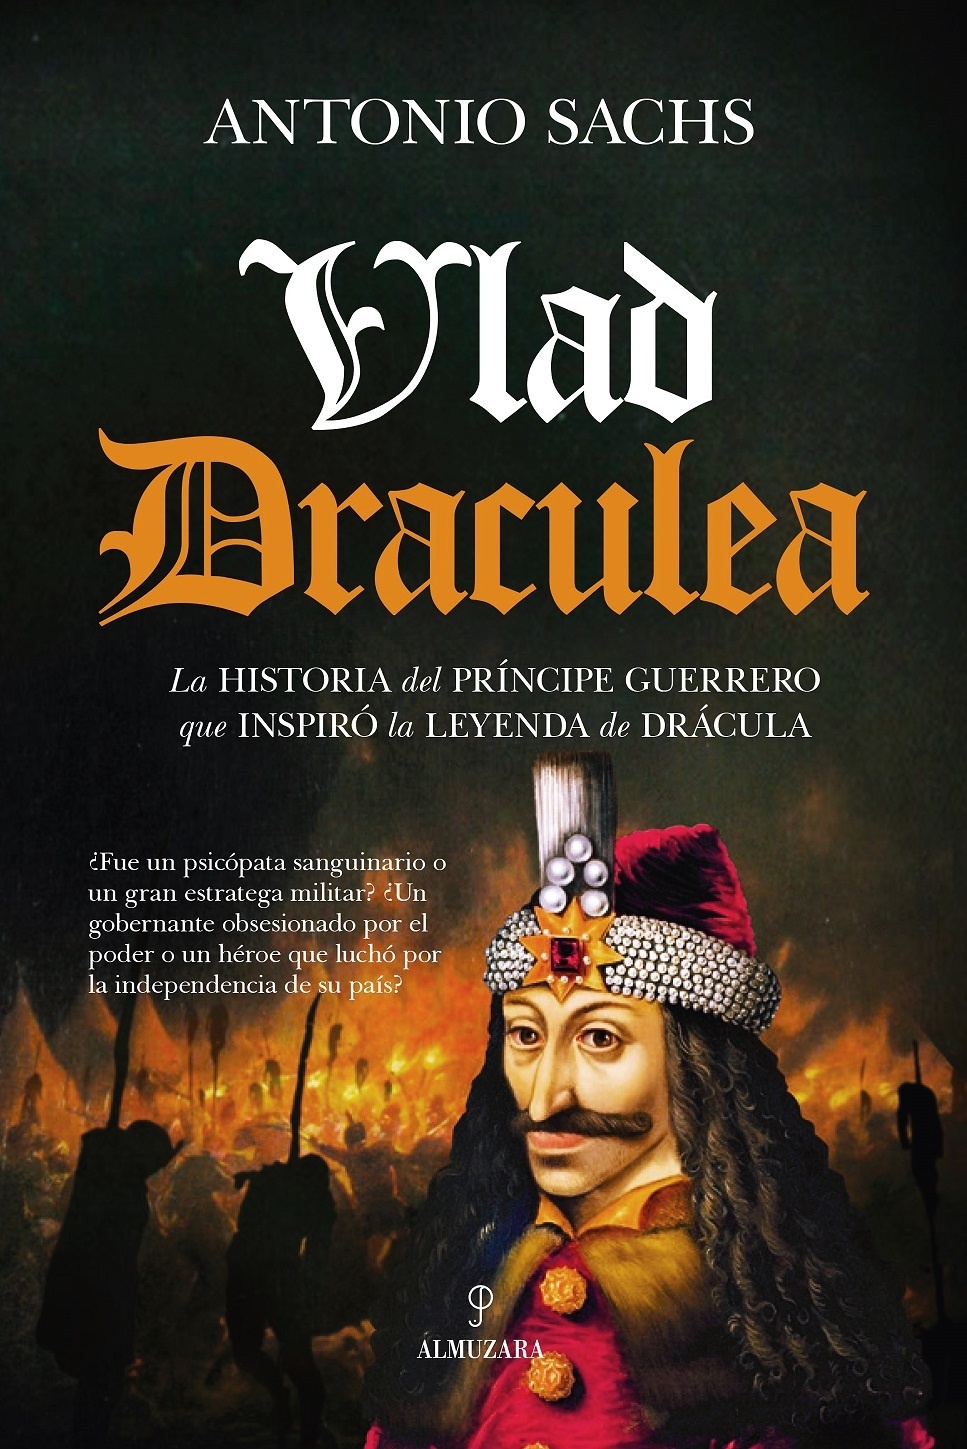 Vlad Draculea "La historia del príncipe guerrero que inspiró la leyenda de Drácula"